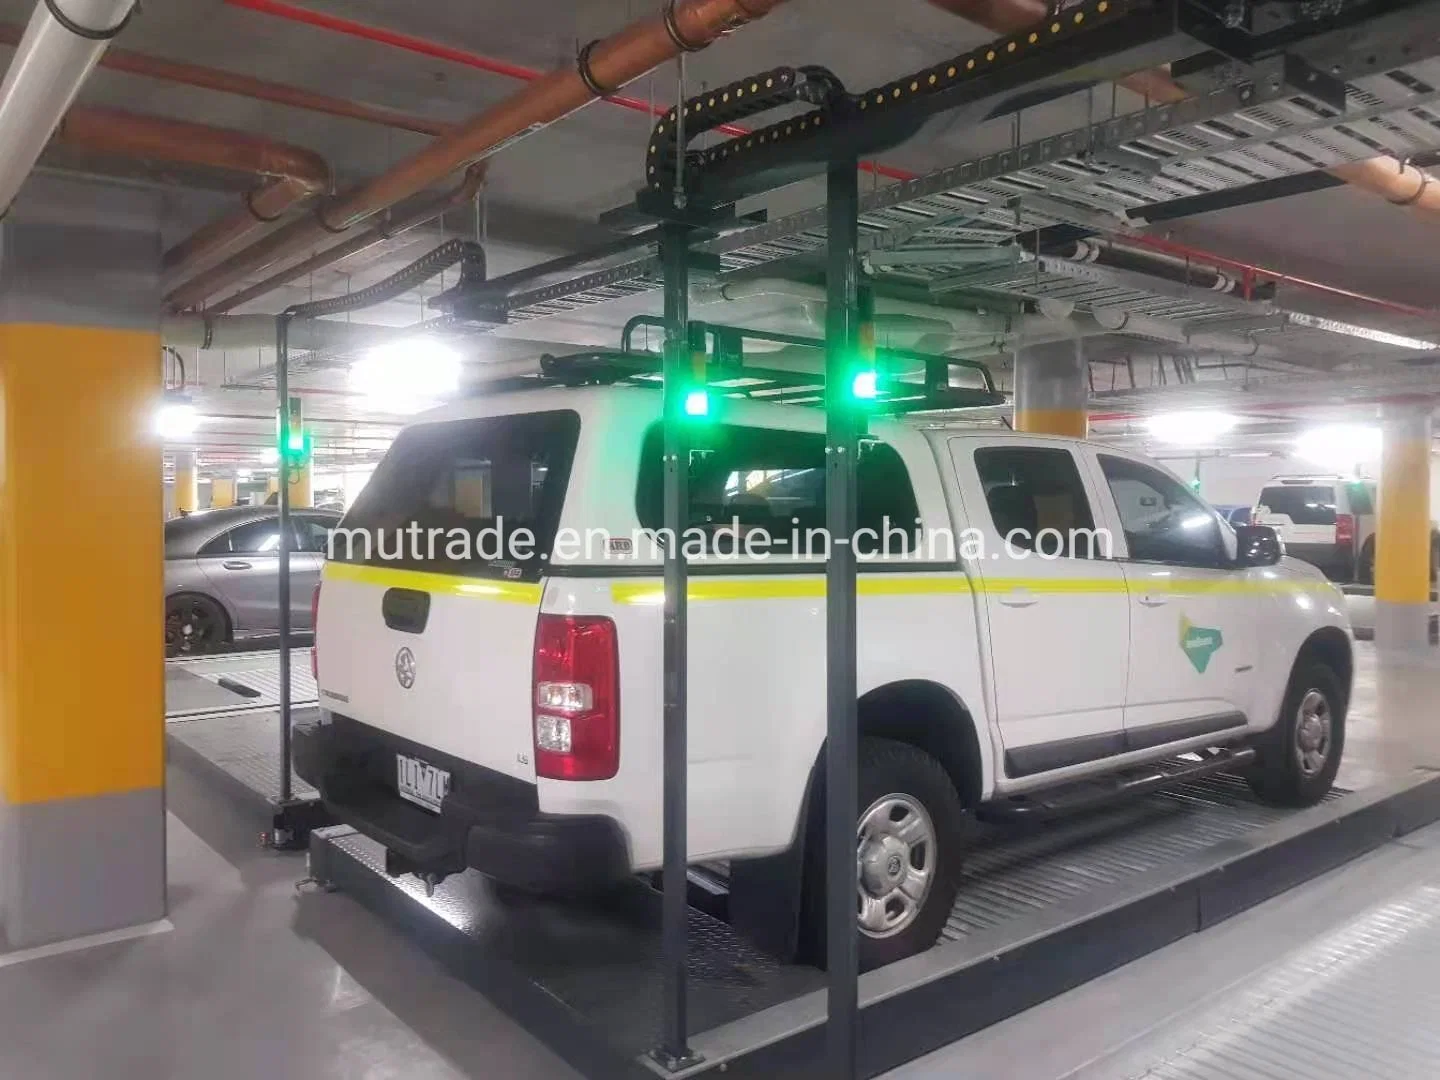 Garage Equipment Car Platform Smart Parking System